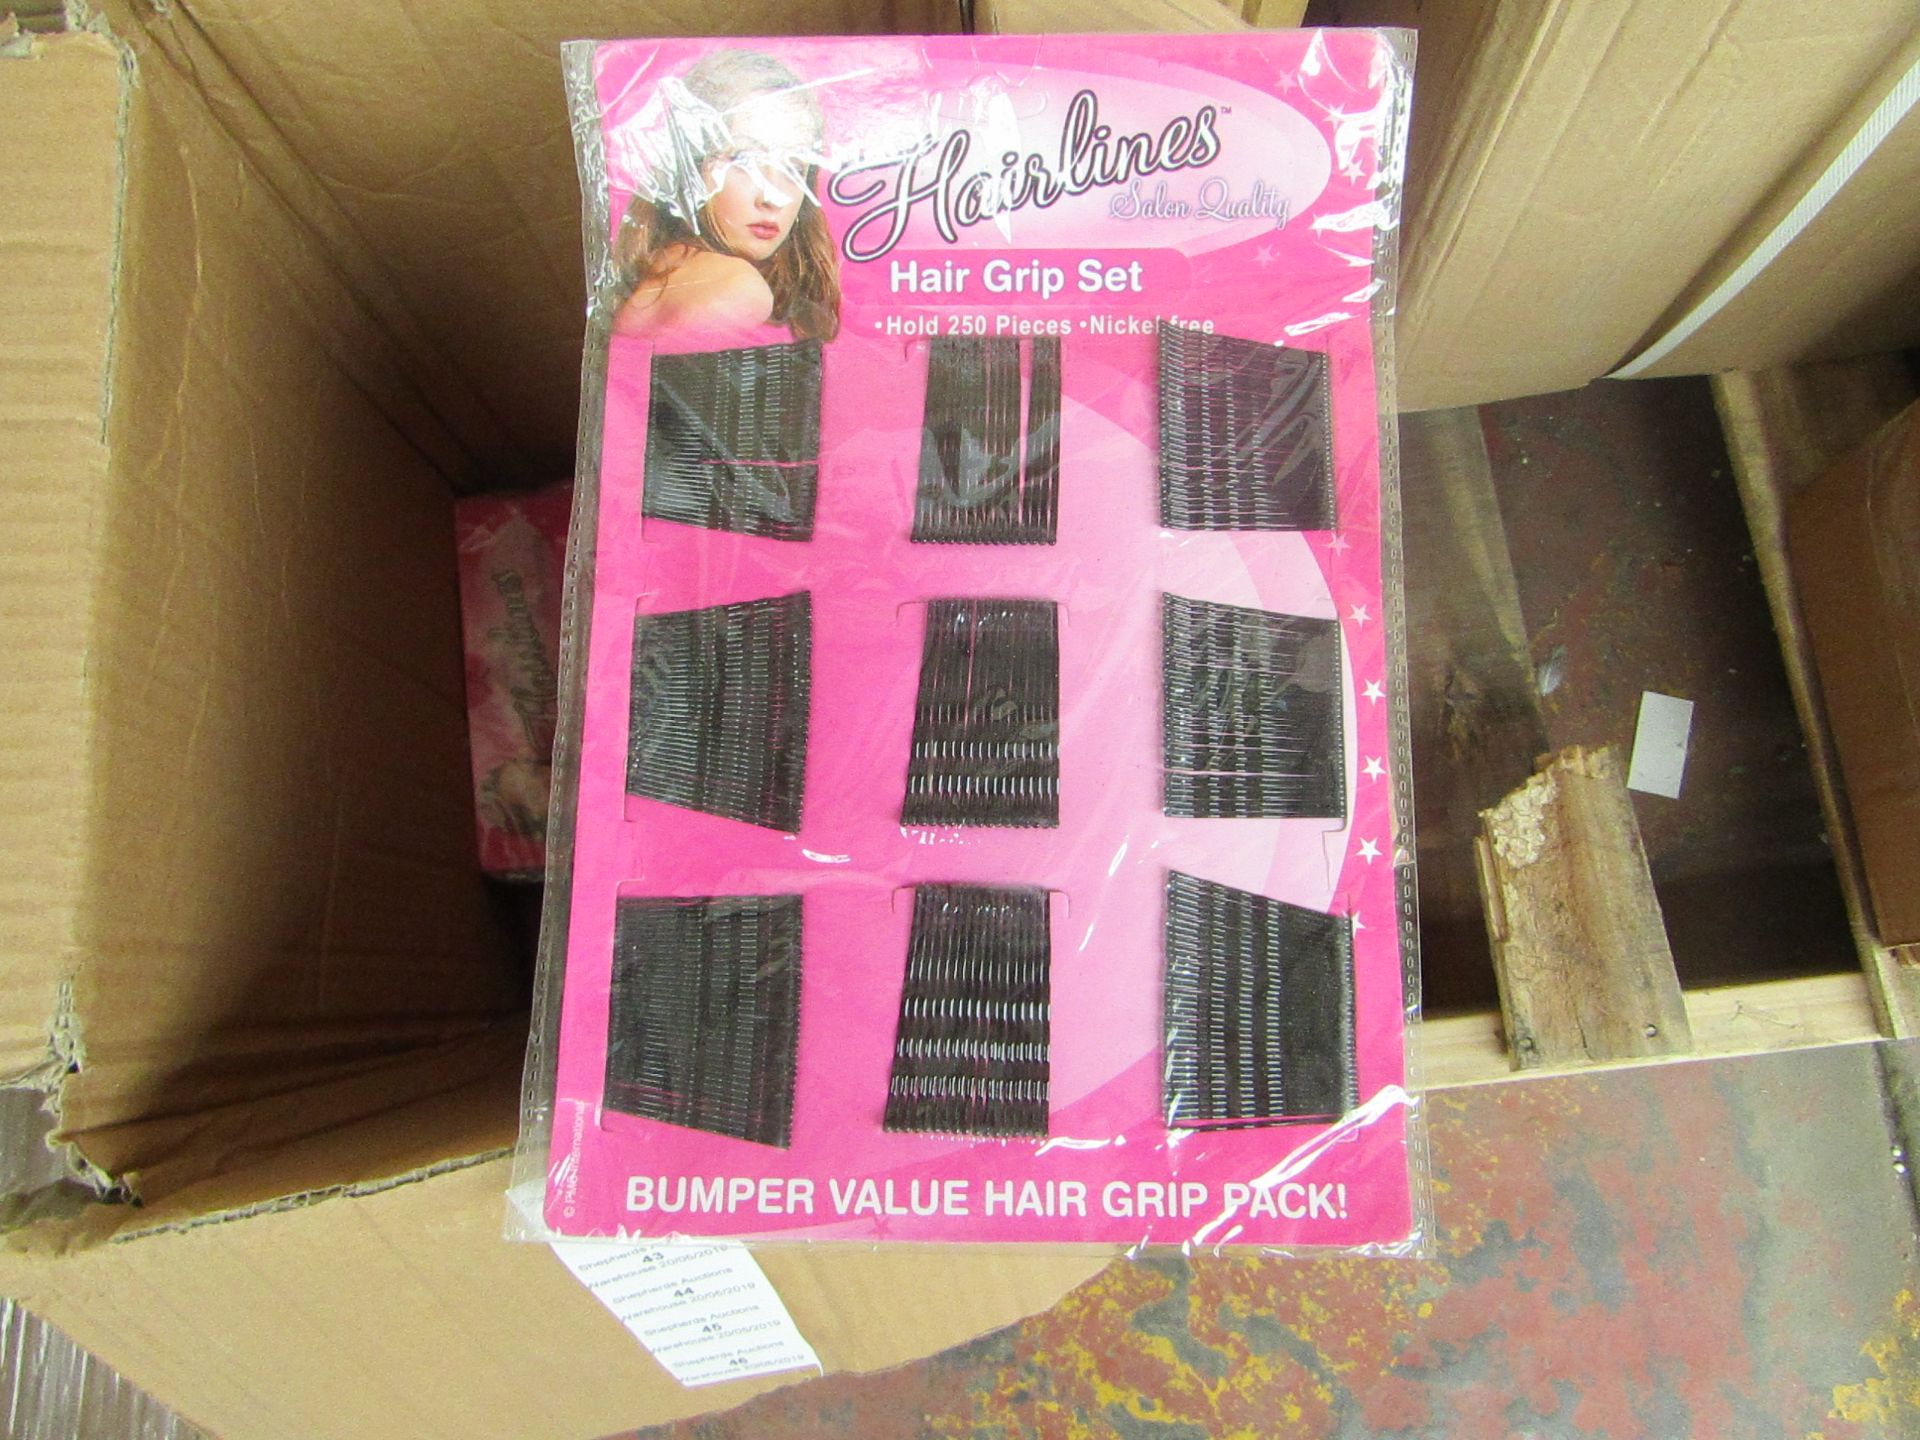 Hairlines Hair Grip Set 250pcs Nickle Free, in Packaging